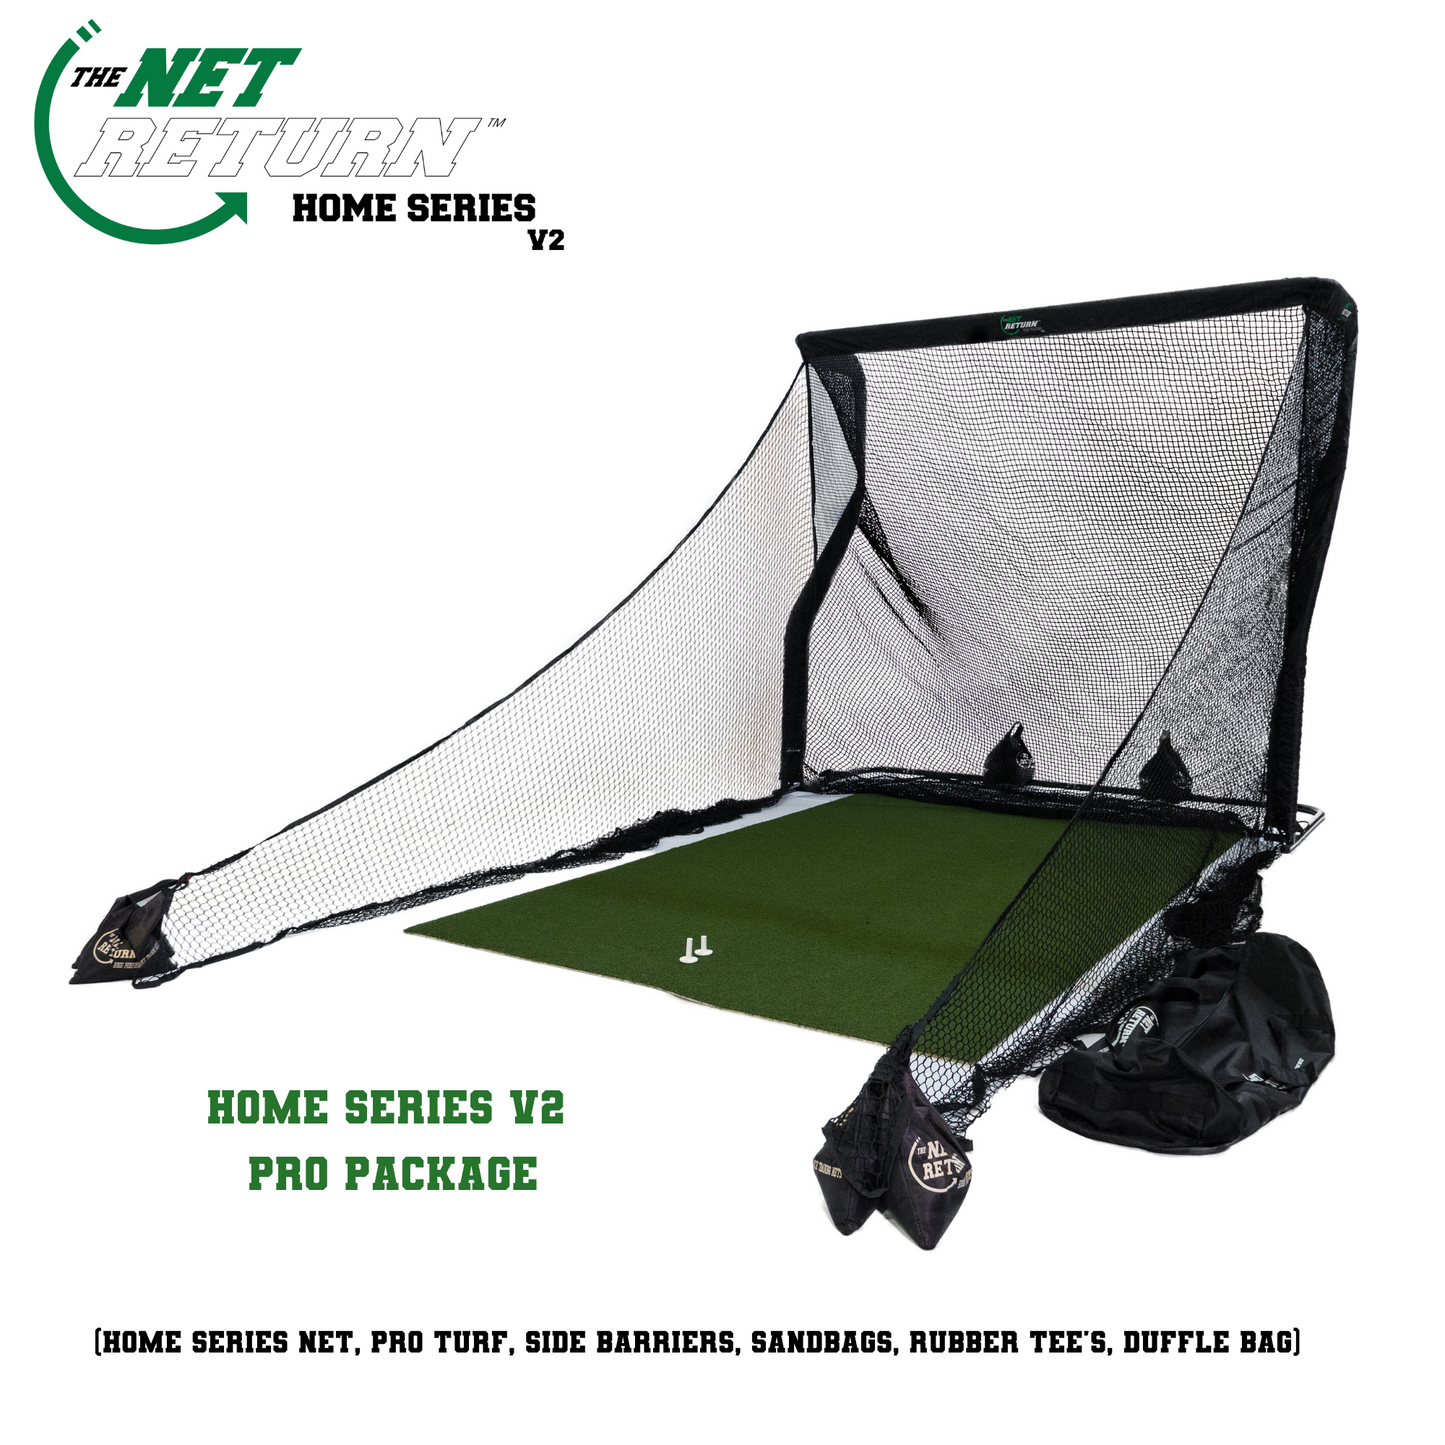 Net Return - Home Series V2 Golf Net